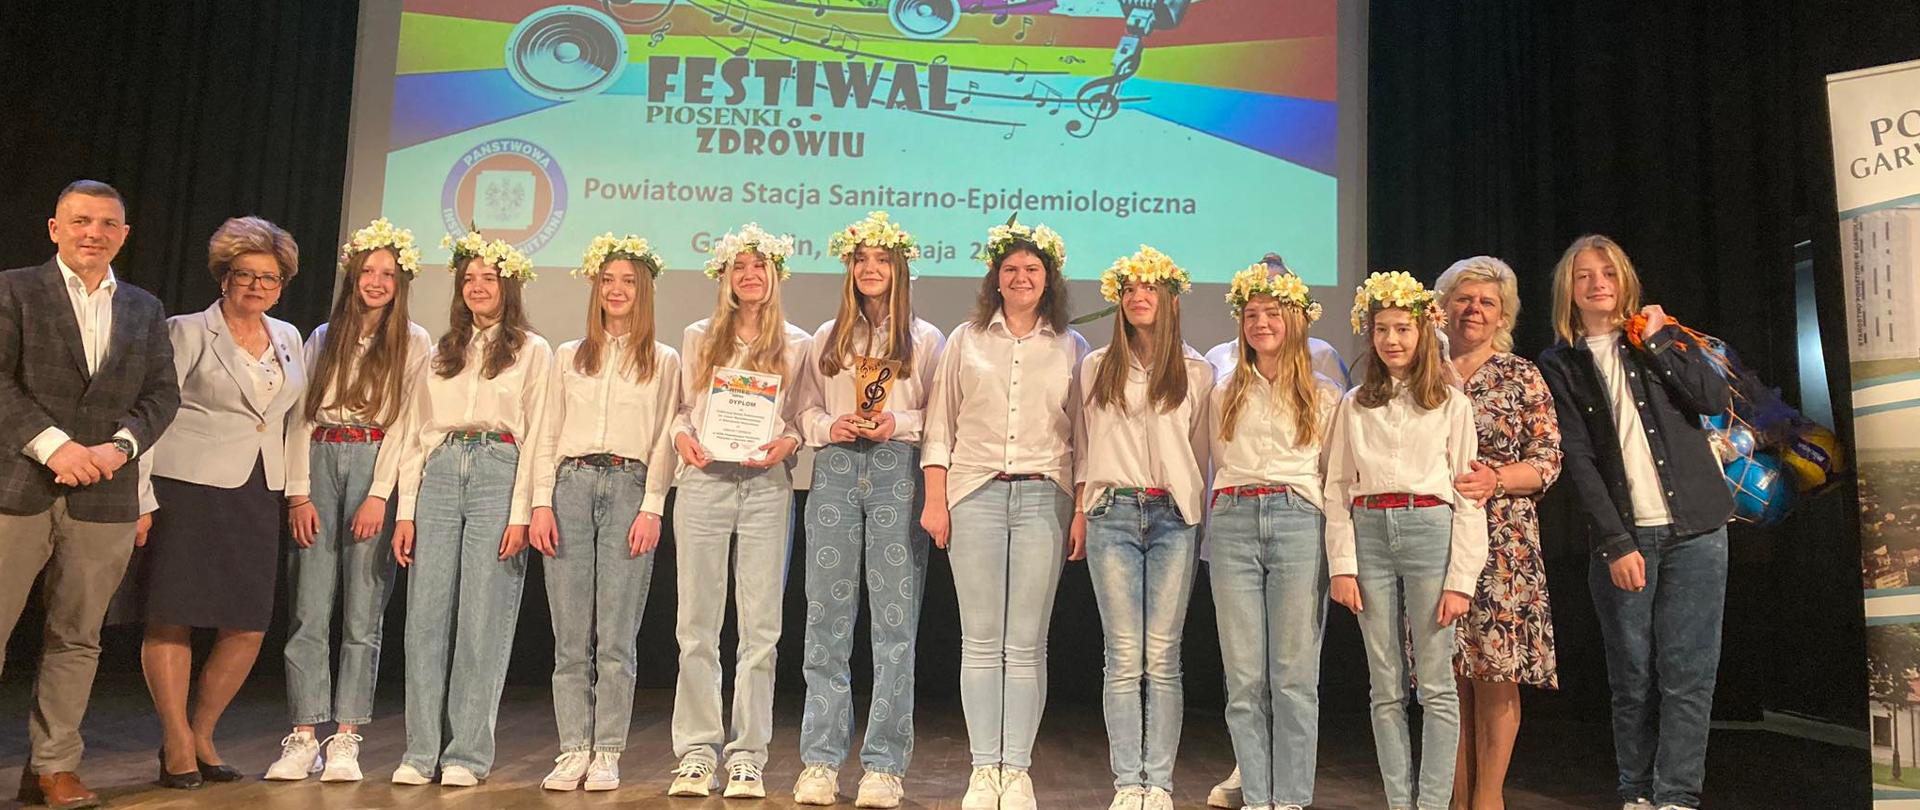 XXIX Festiwal Piosenki o Zdrowiu 